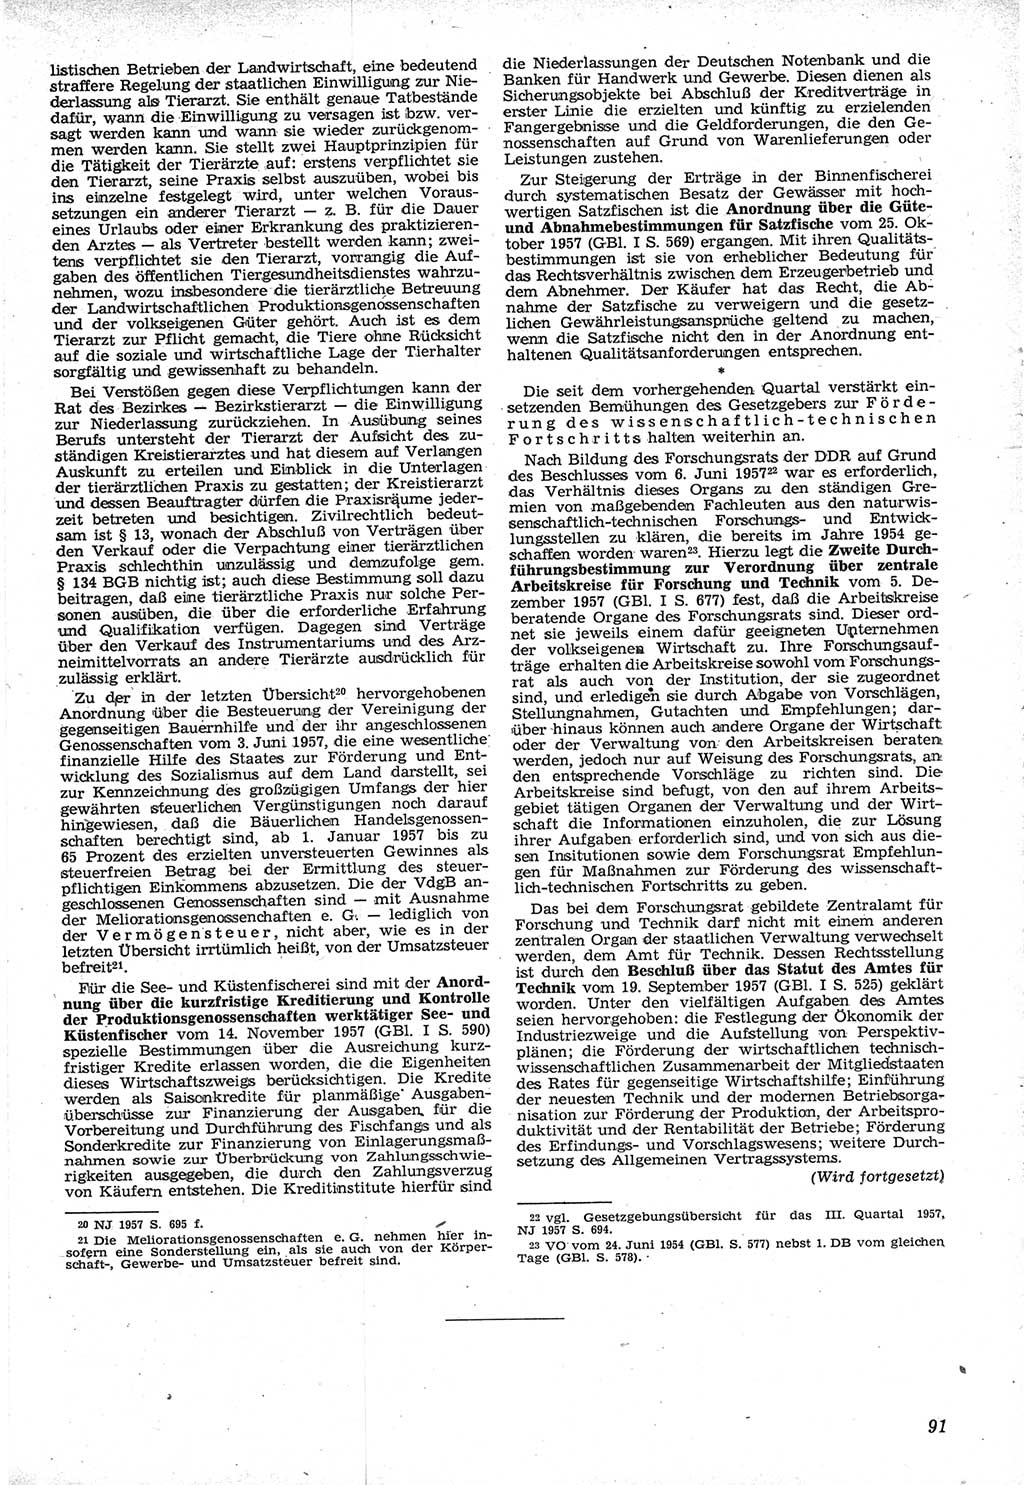 Neue Justiz (NJ), Zeitschrift für Recht und Rechtswissenschaft [Deutsche Demokratische Republik (DDR)], 12. Jahrgang 1958, Seite 91 (NJ DDR 1958, S. 91)